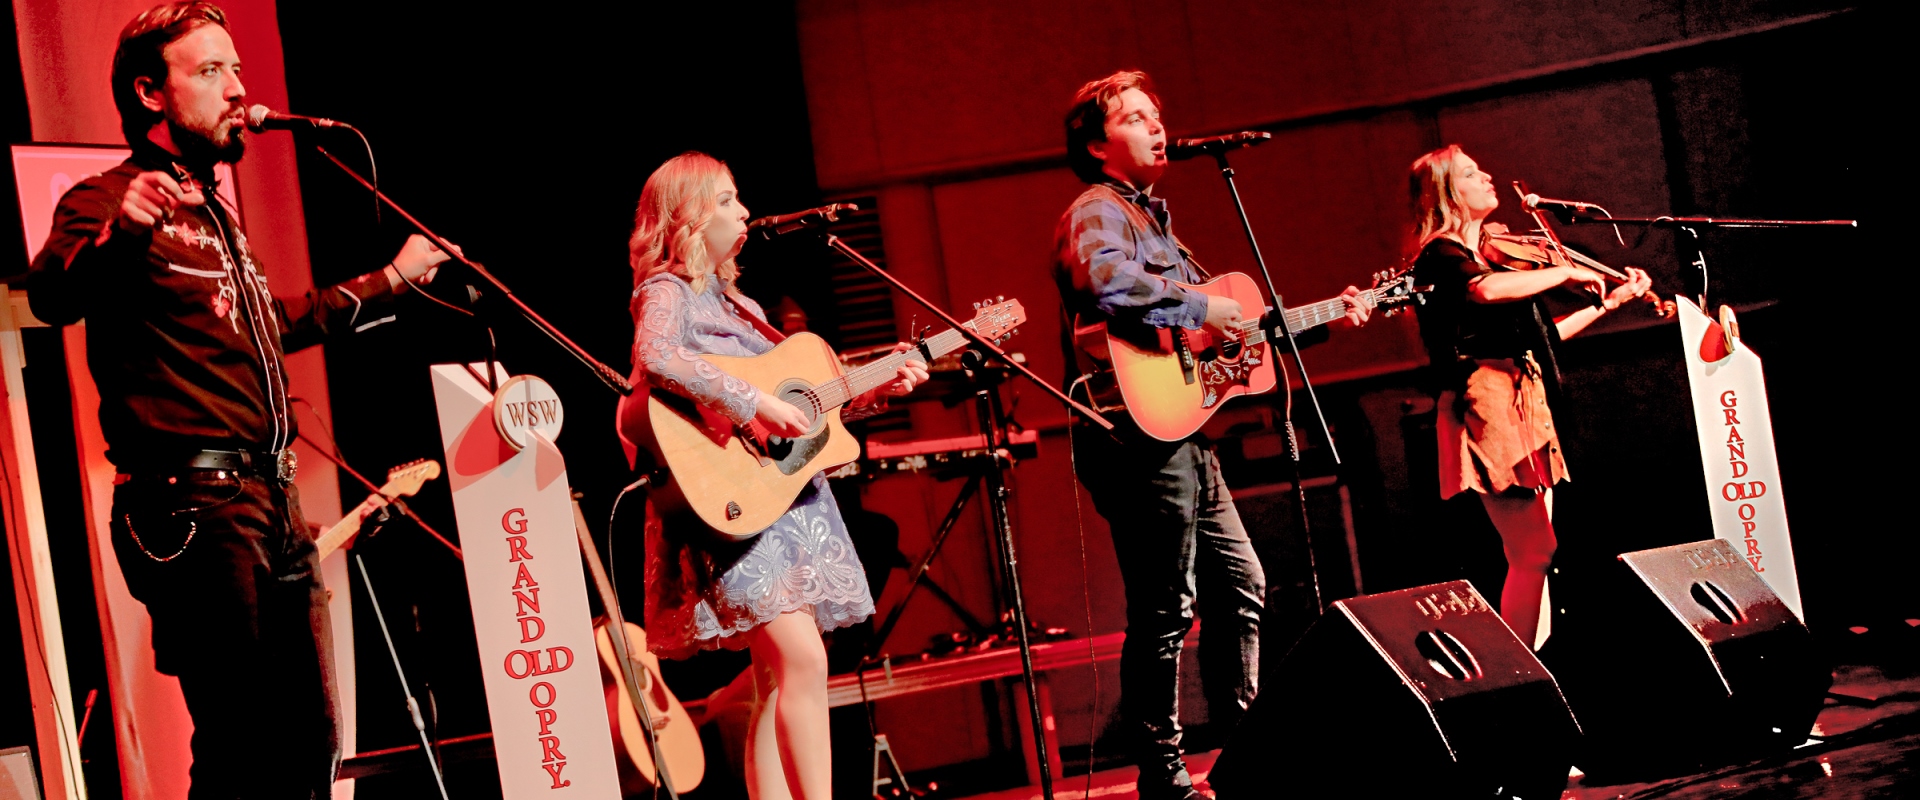 Musiker mit Country Kleidung auf einer Bühne.